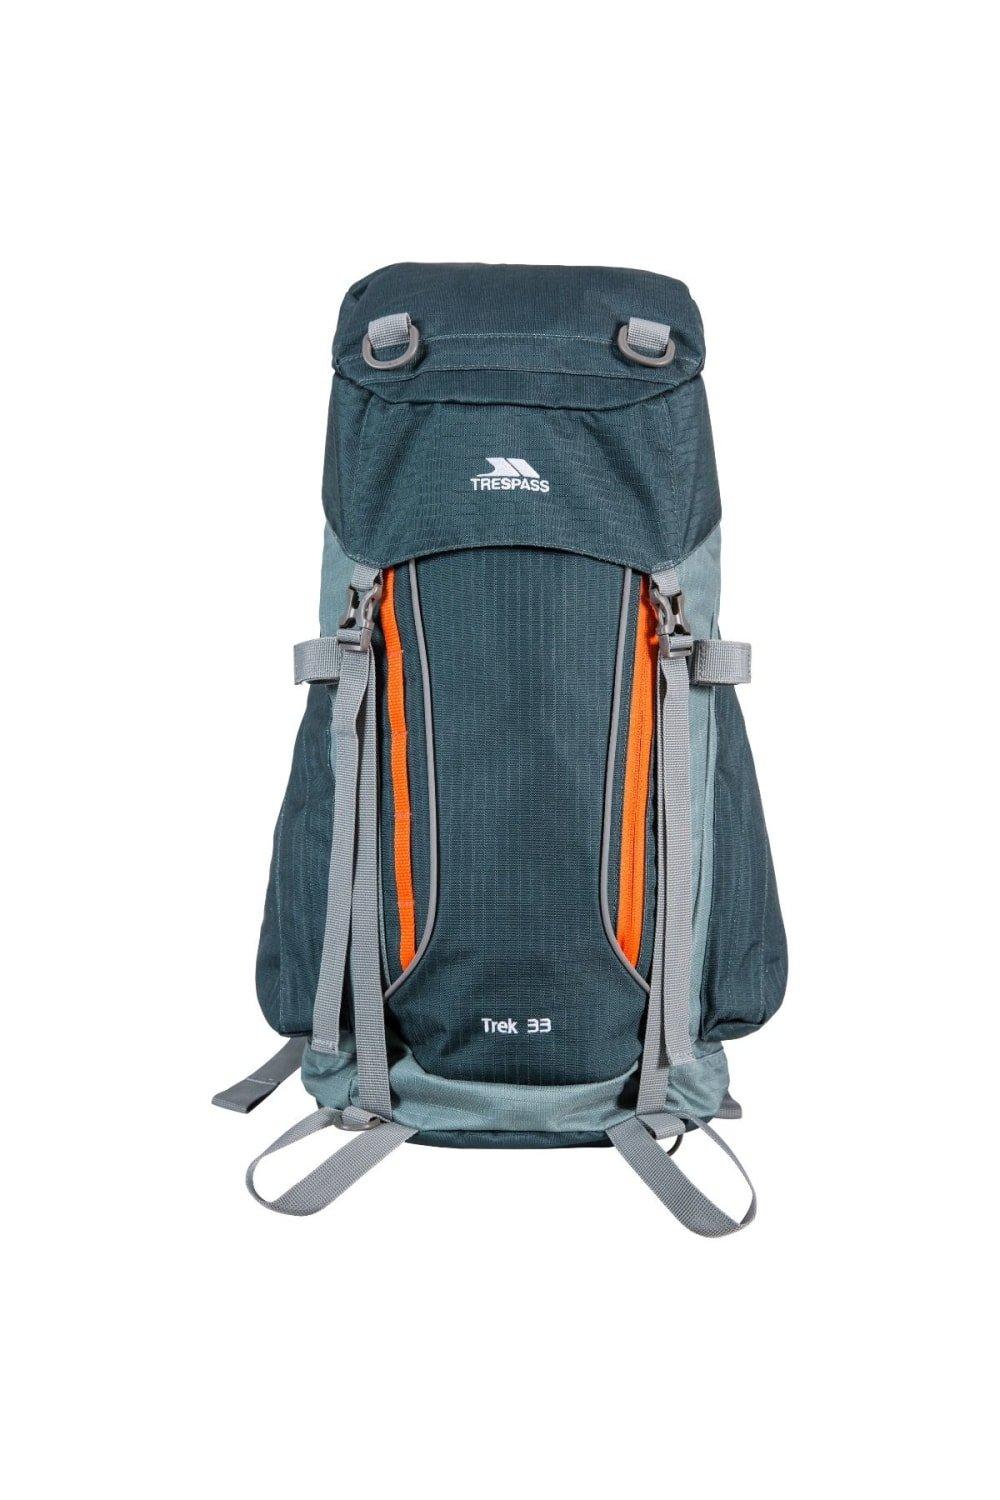 Trek 33 Rucksack Backpack (33 Litres)